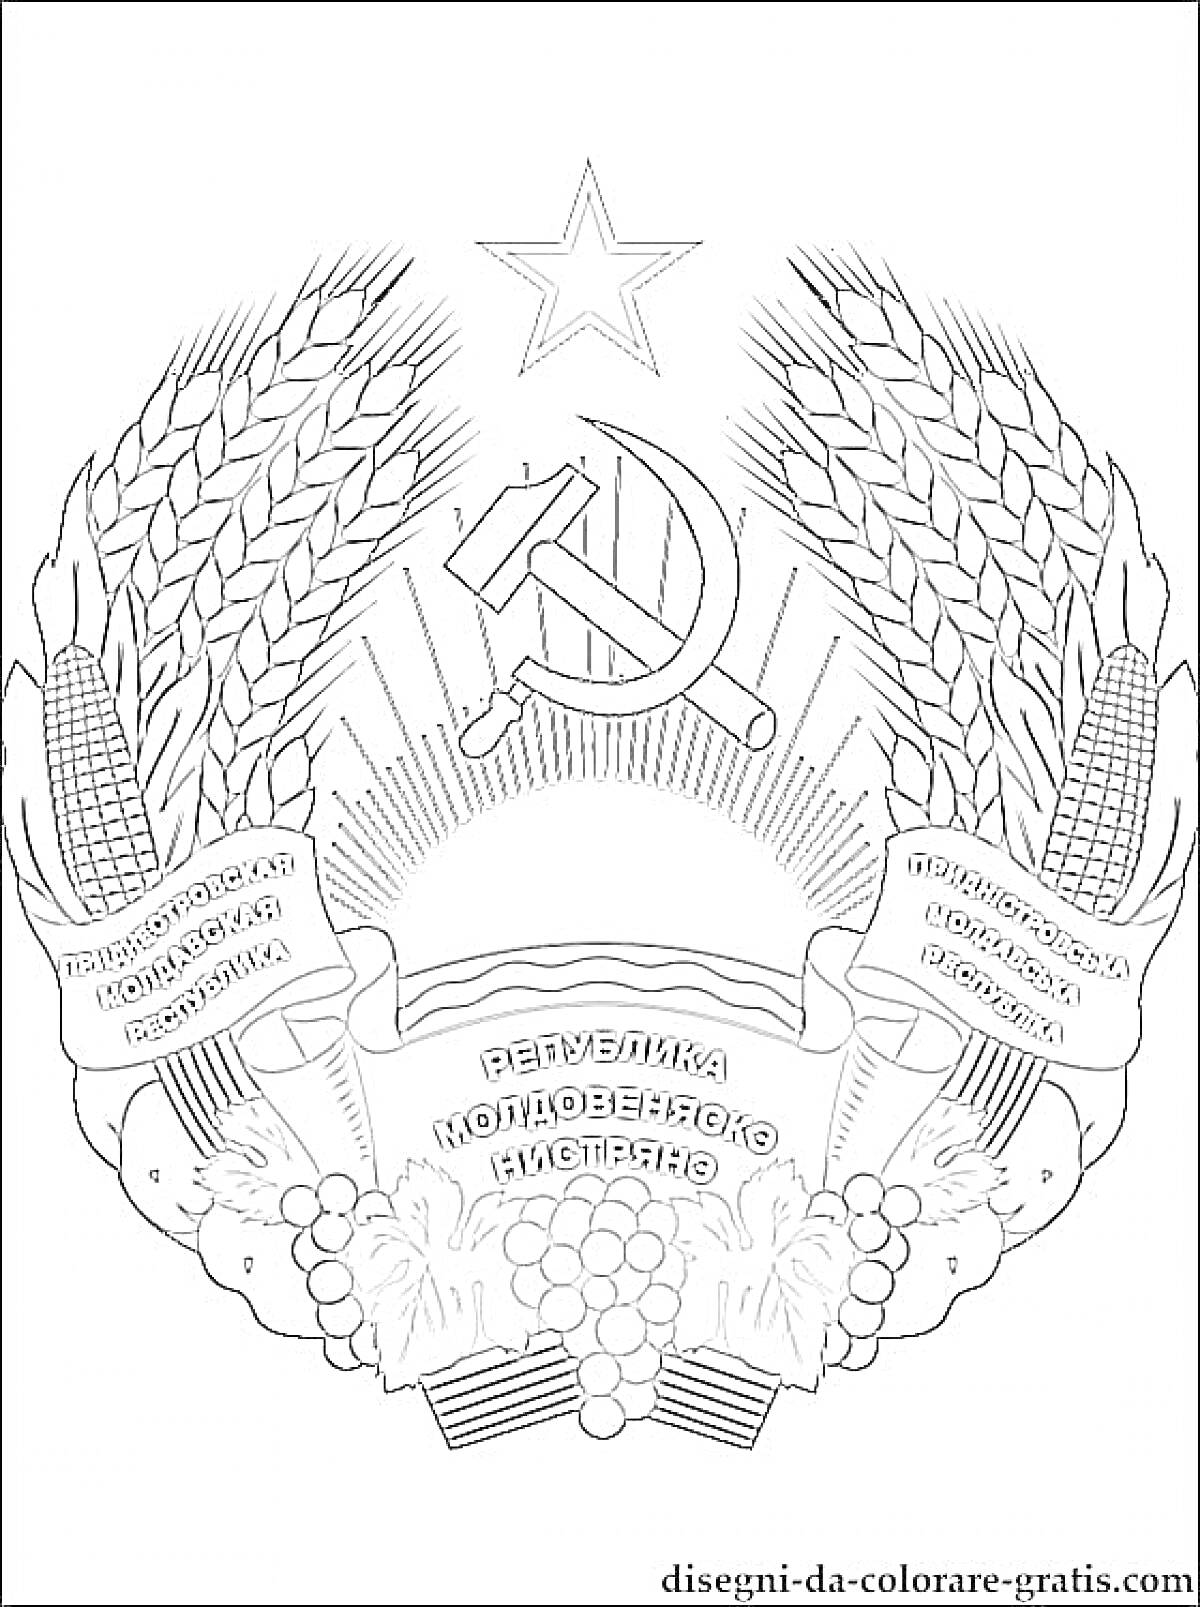 Герб Советского Союза с серпом и молотом, звезда, пшеница, надписи на лентах, виноград